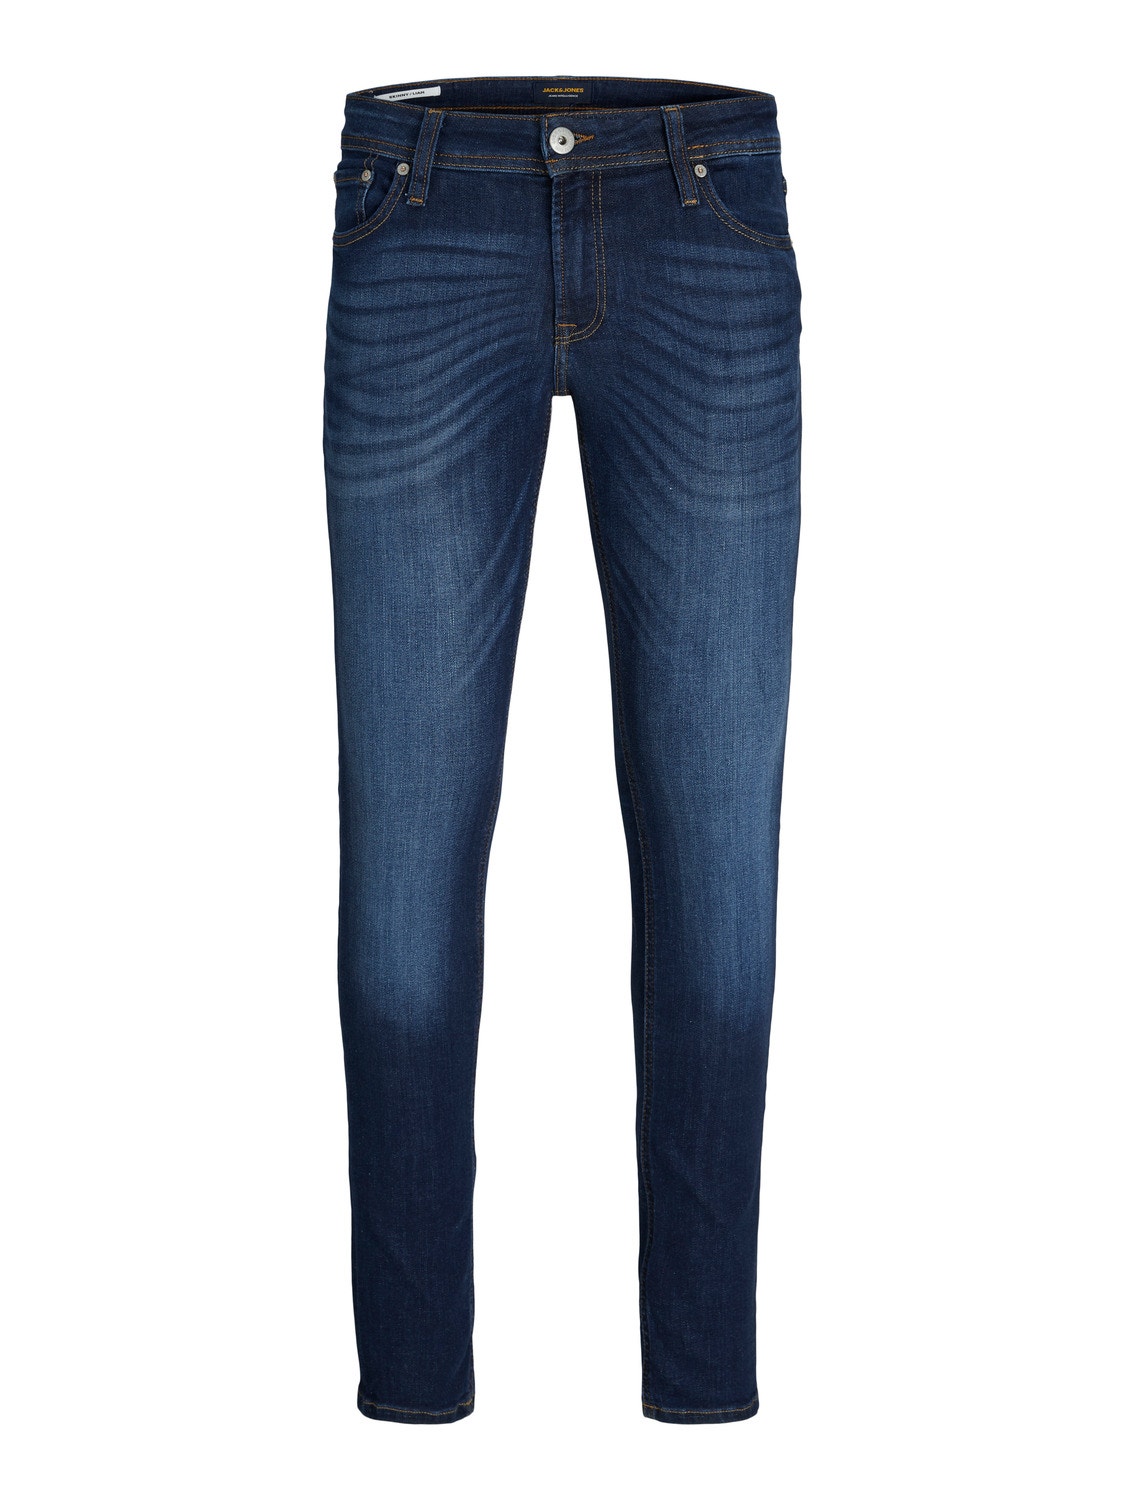 JJILIAM JJORIGINAL SBD 014 50SPS NOOS Skinny fit jeans with 20% ...